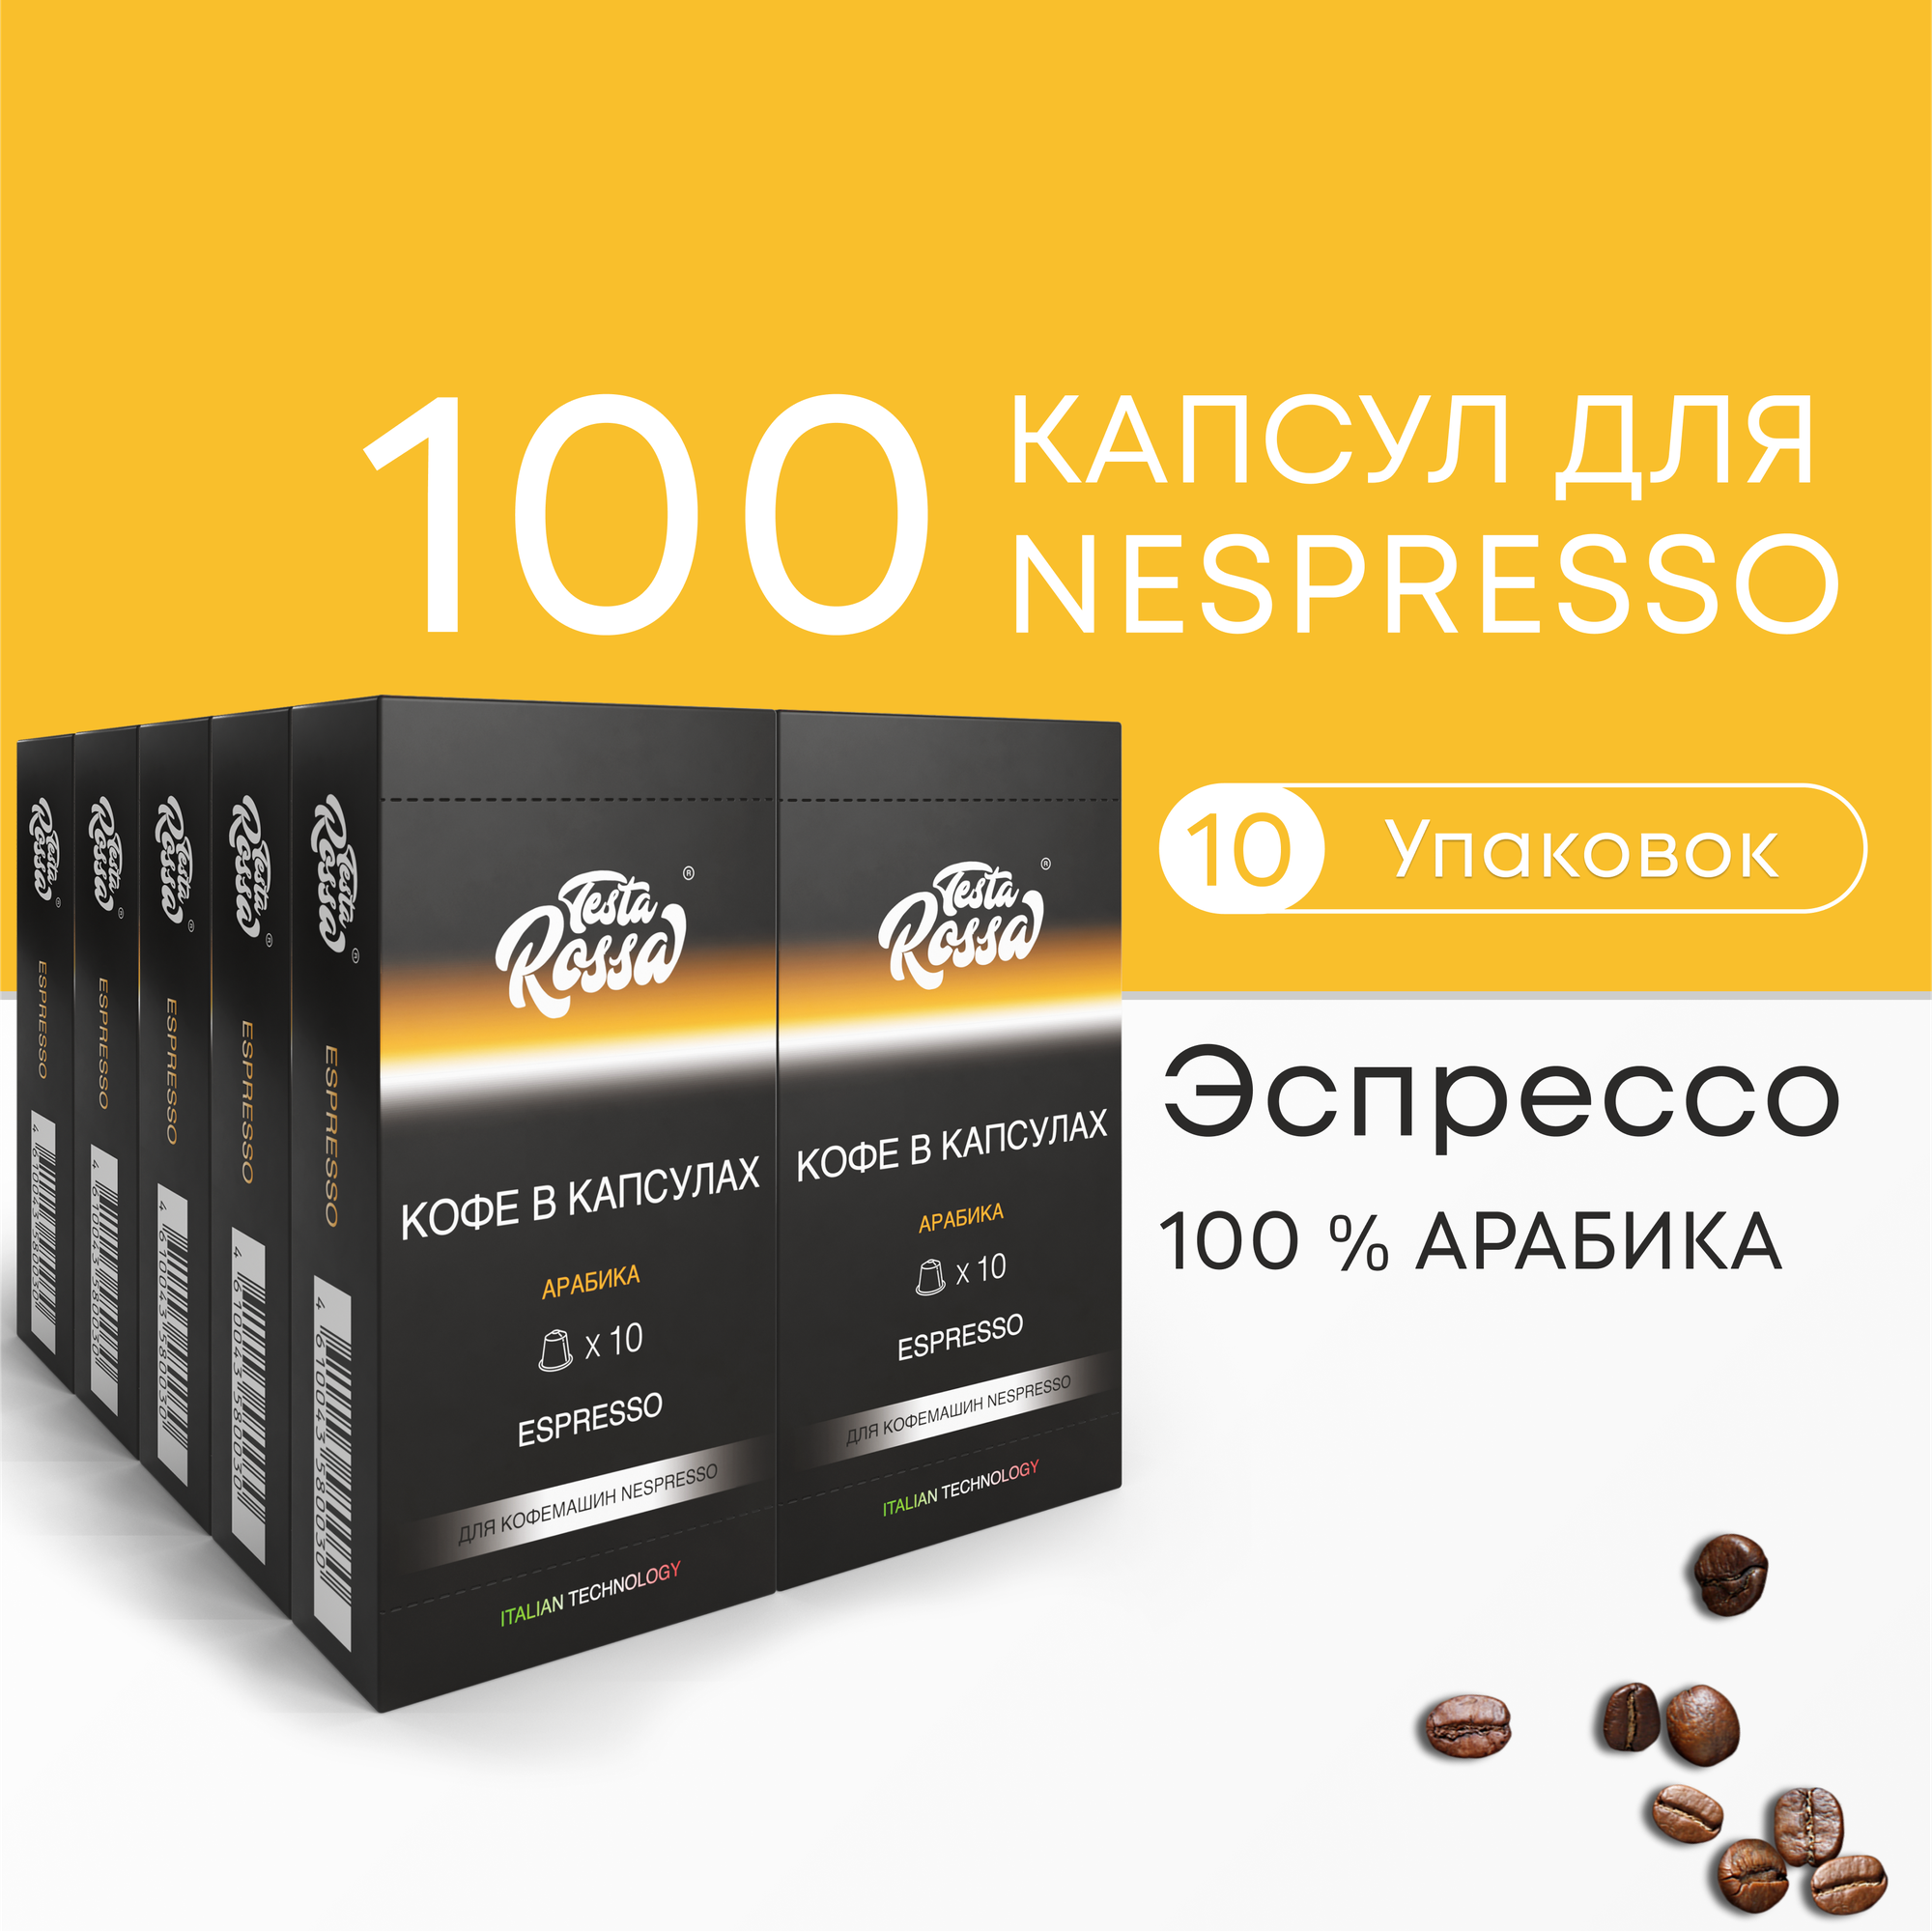 Эспрессо Арабика 100% - Капсулы Testa Rossa - 100 шт, набор кофе в капсулах неспрессо, для кофемашины NESPRESSO